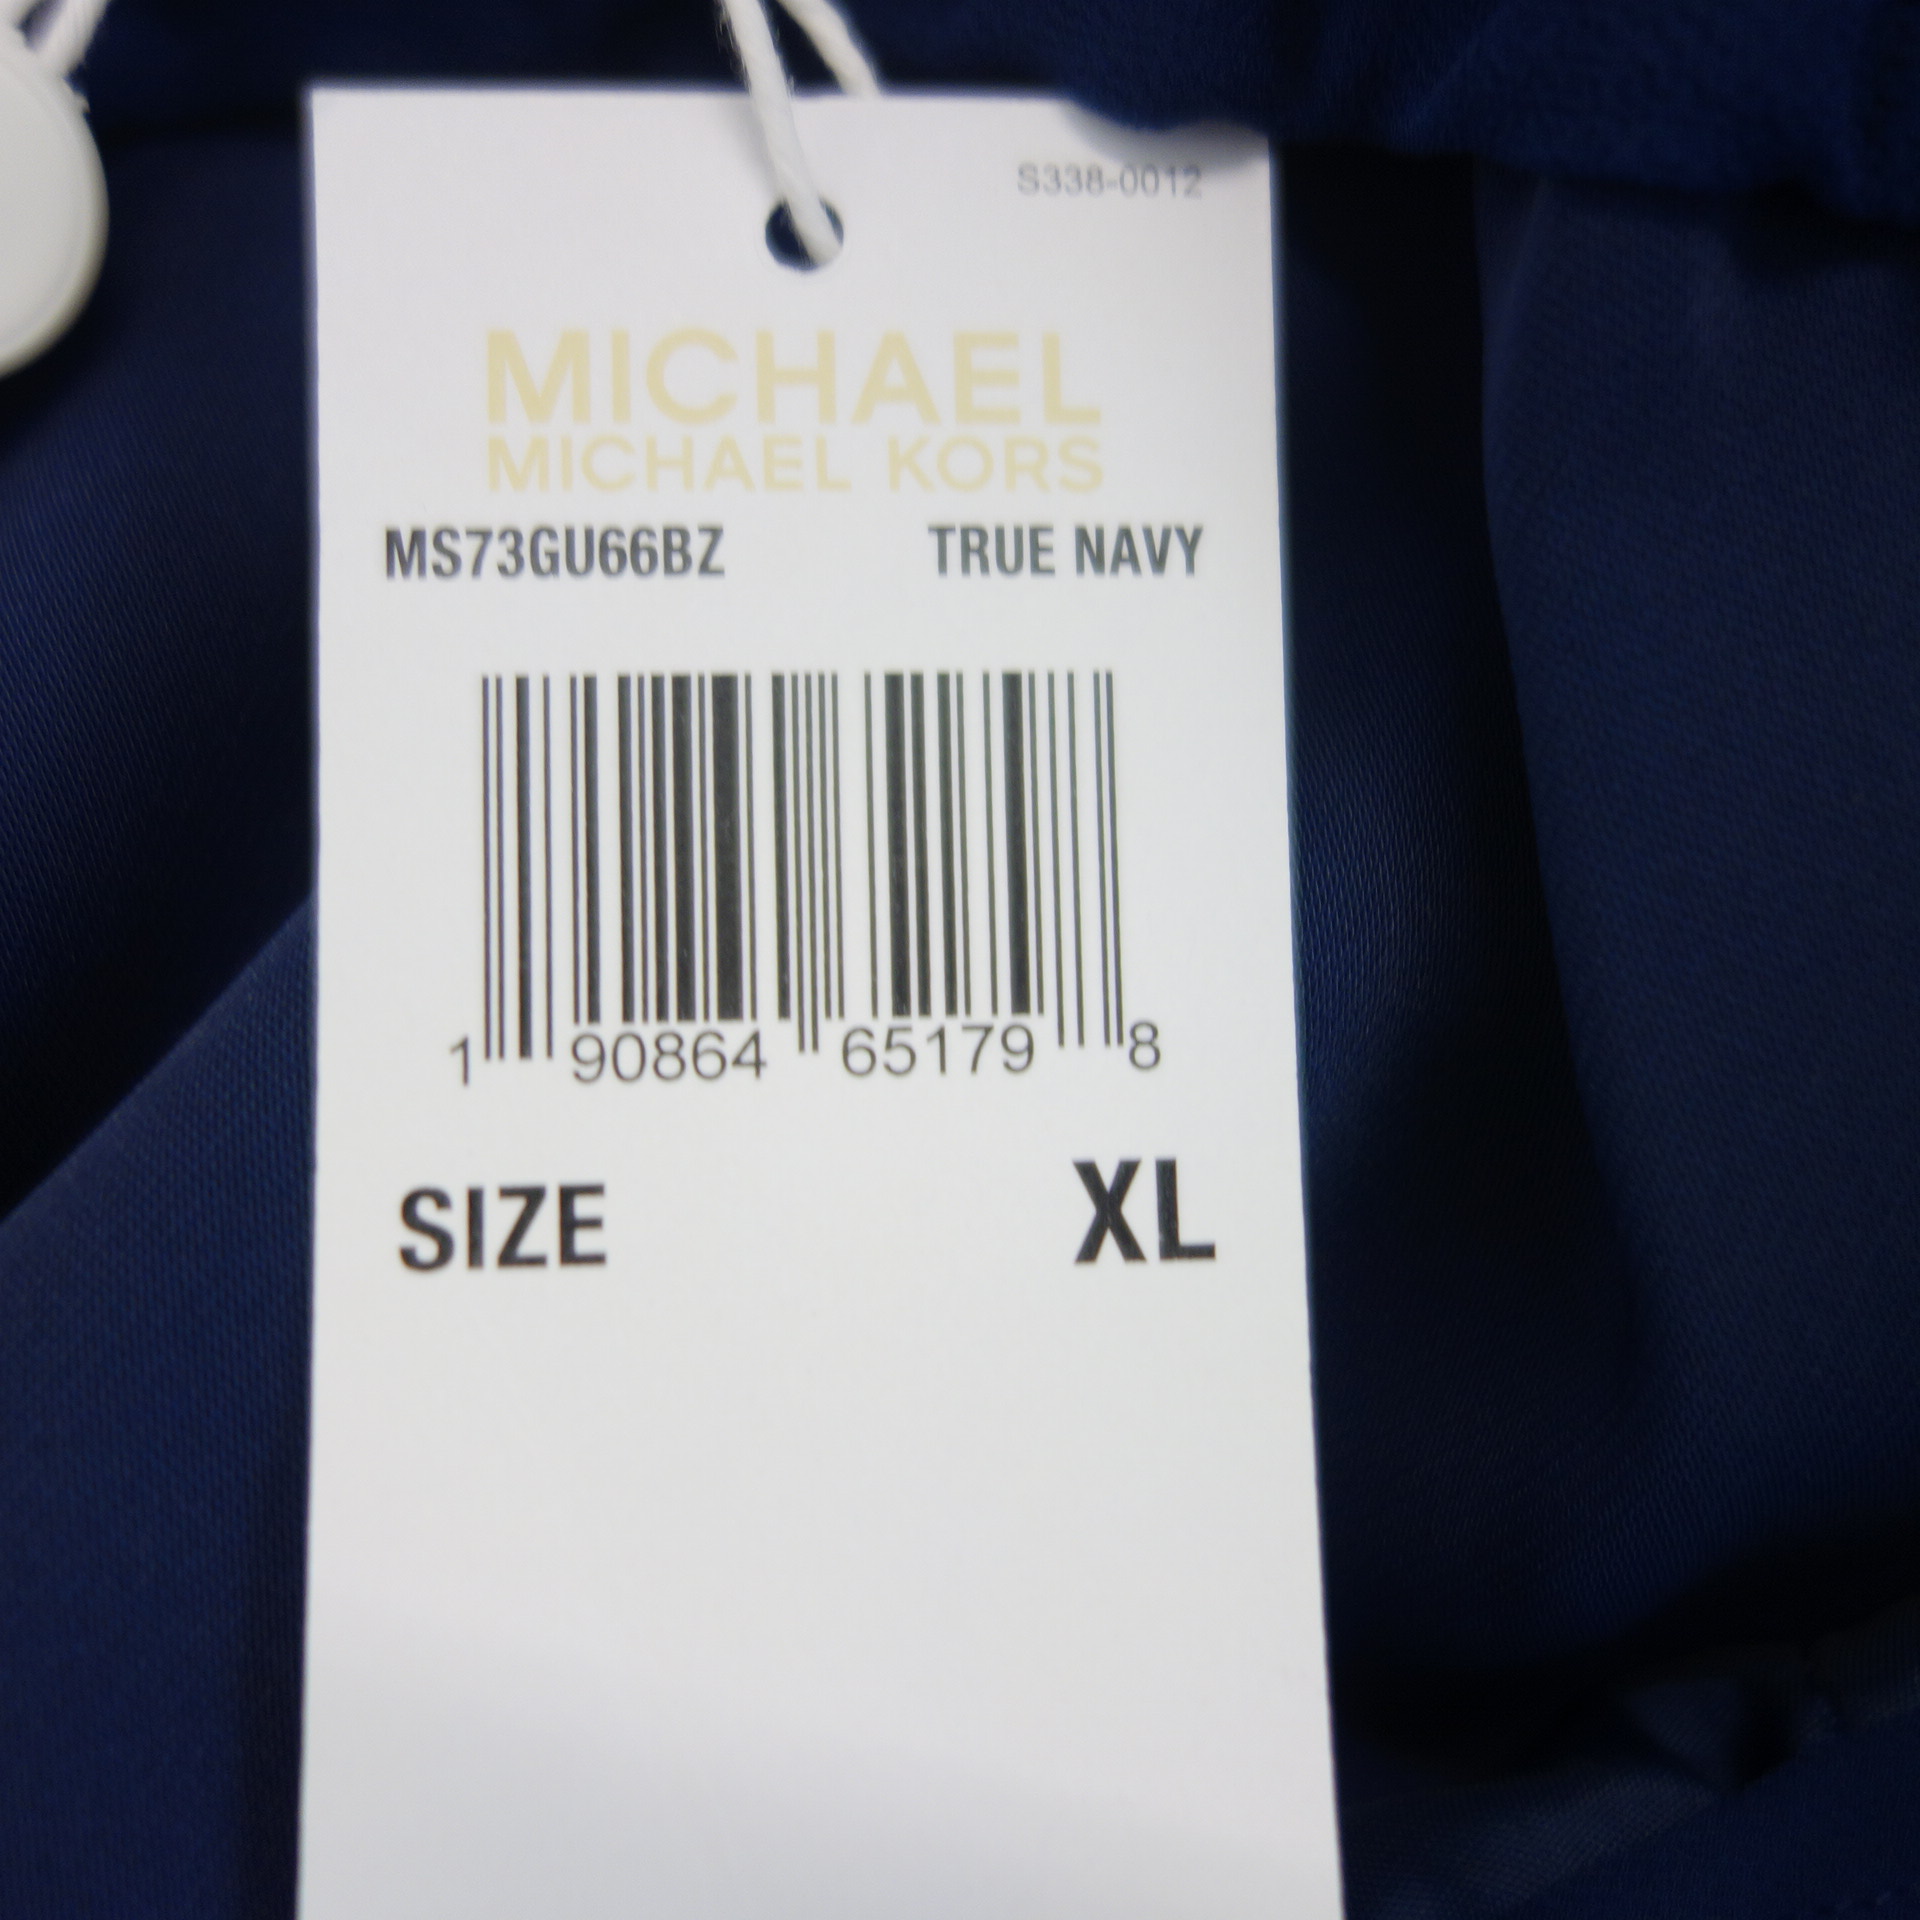 MICHAEL KORS Damen Hose  Stoffhose Blau XL Elastischer Bund Paperbag Straight